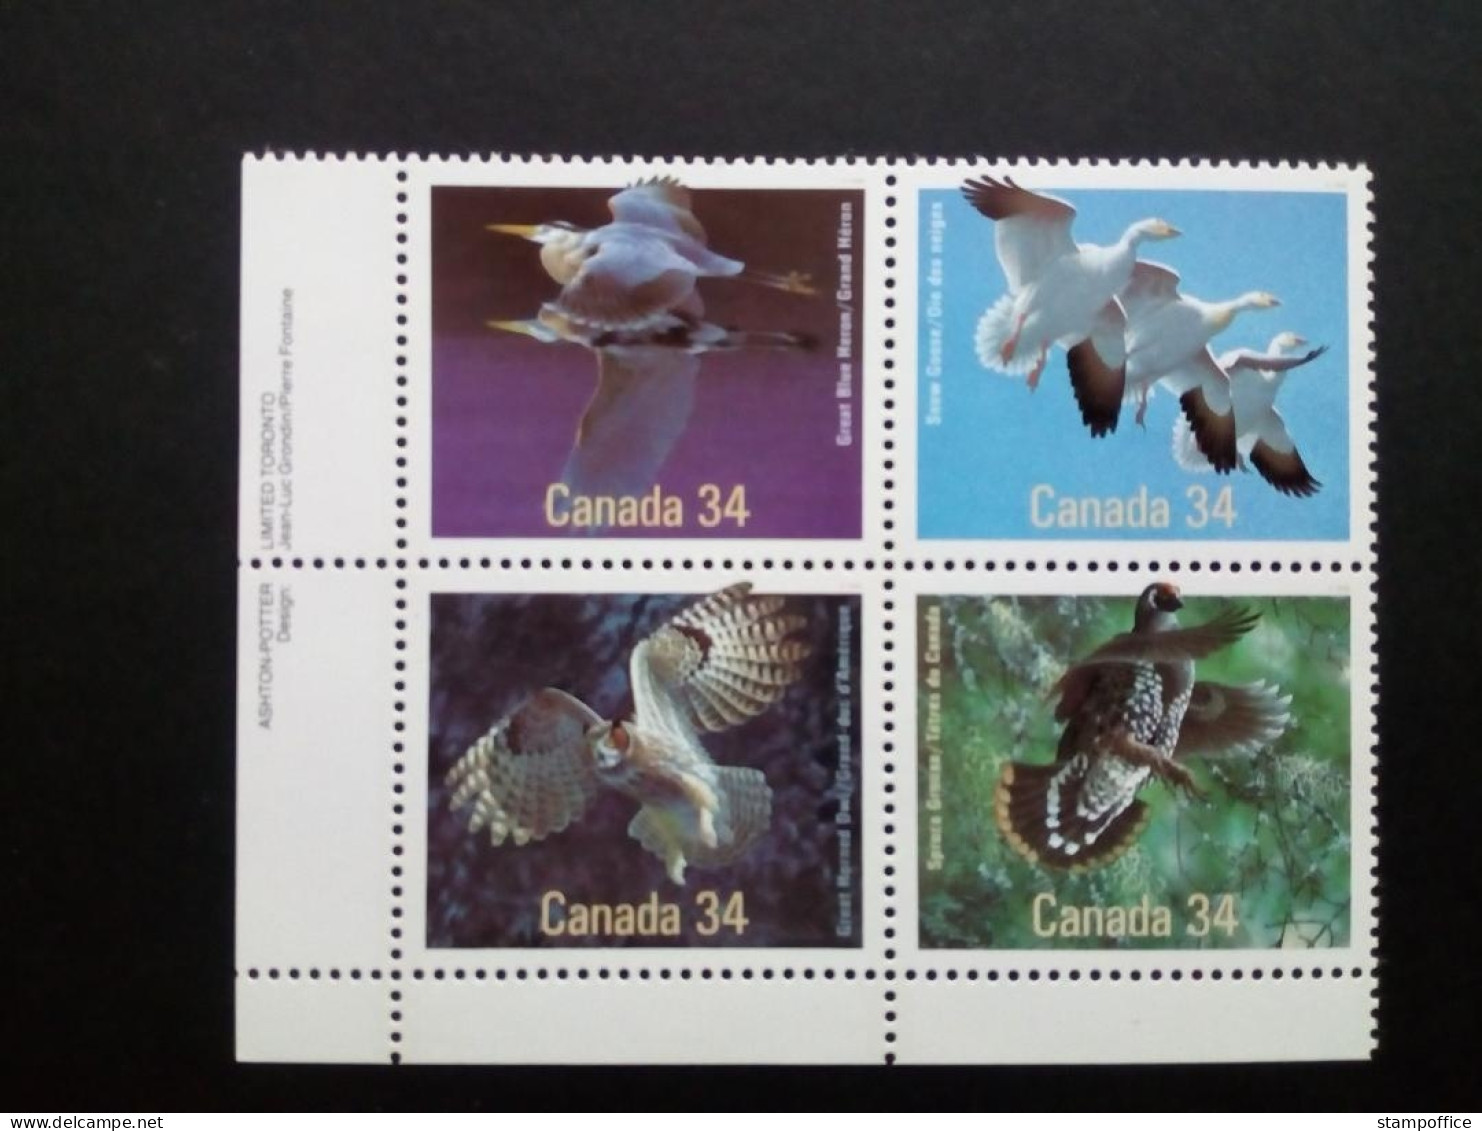 CANADA MI-NR. 995-998 POSTFRISCH VÖGEL 1986 SCHNEEGANS GRAUREIHER WLADHUHN UHU - Owls